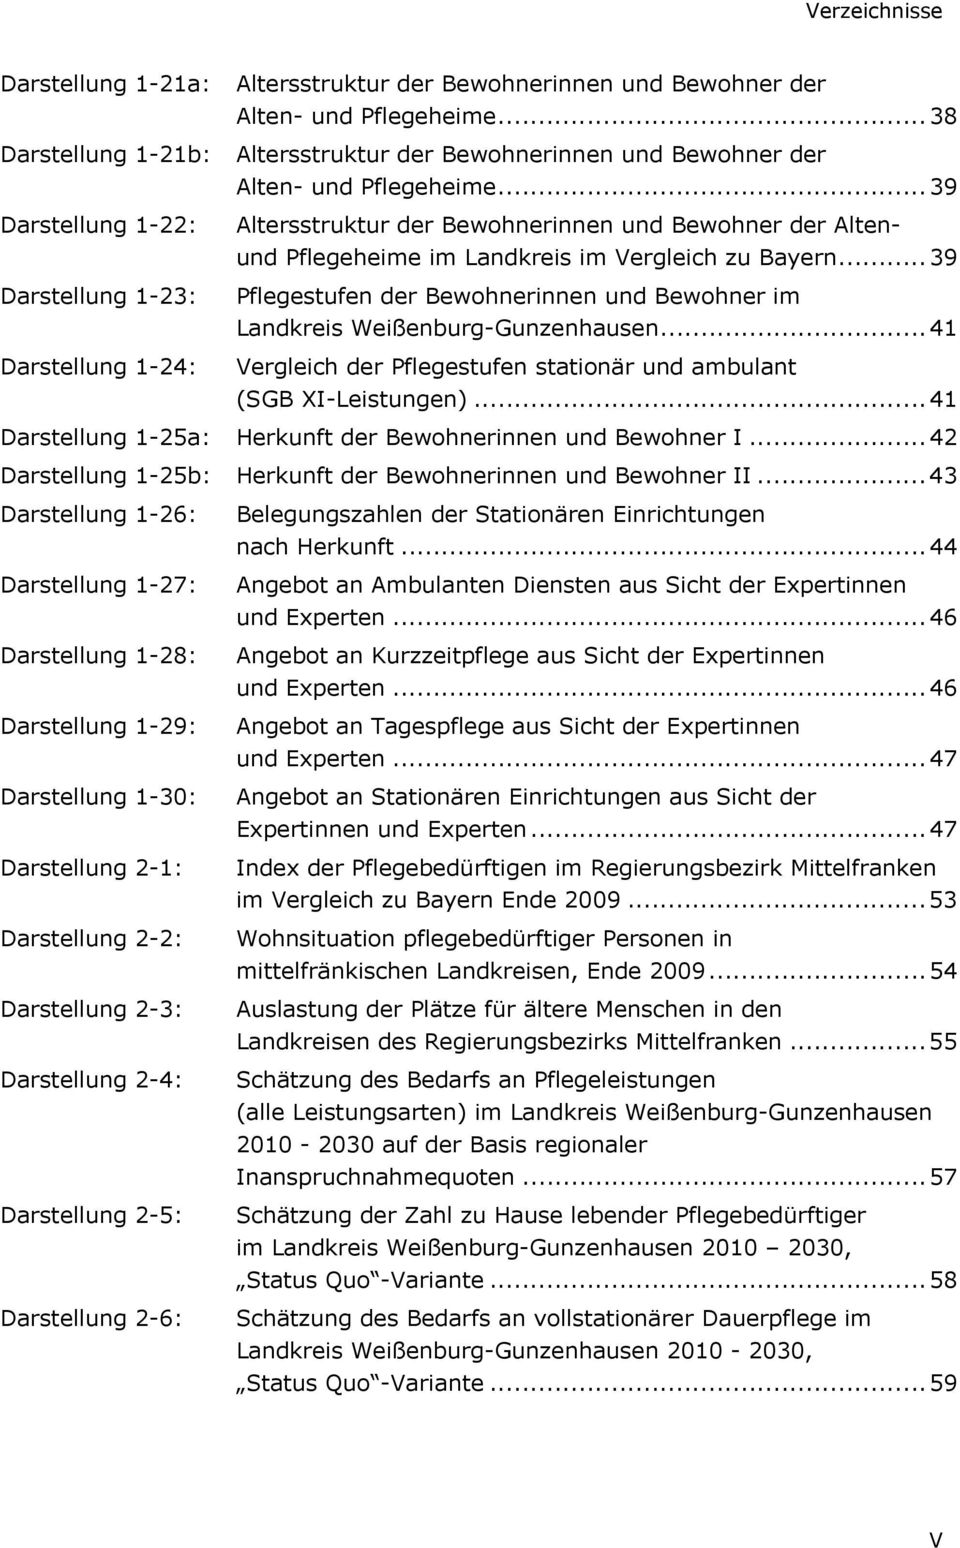 .. 39 Pflegestufen der Bewohnerinnen und Bewohner im Landkreis Weißenburg-Gunzenhausen... 41 Vergleich der Pflegestufen stationär und ambulant (SGB XI-Leistungen).